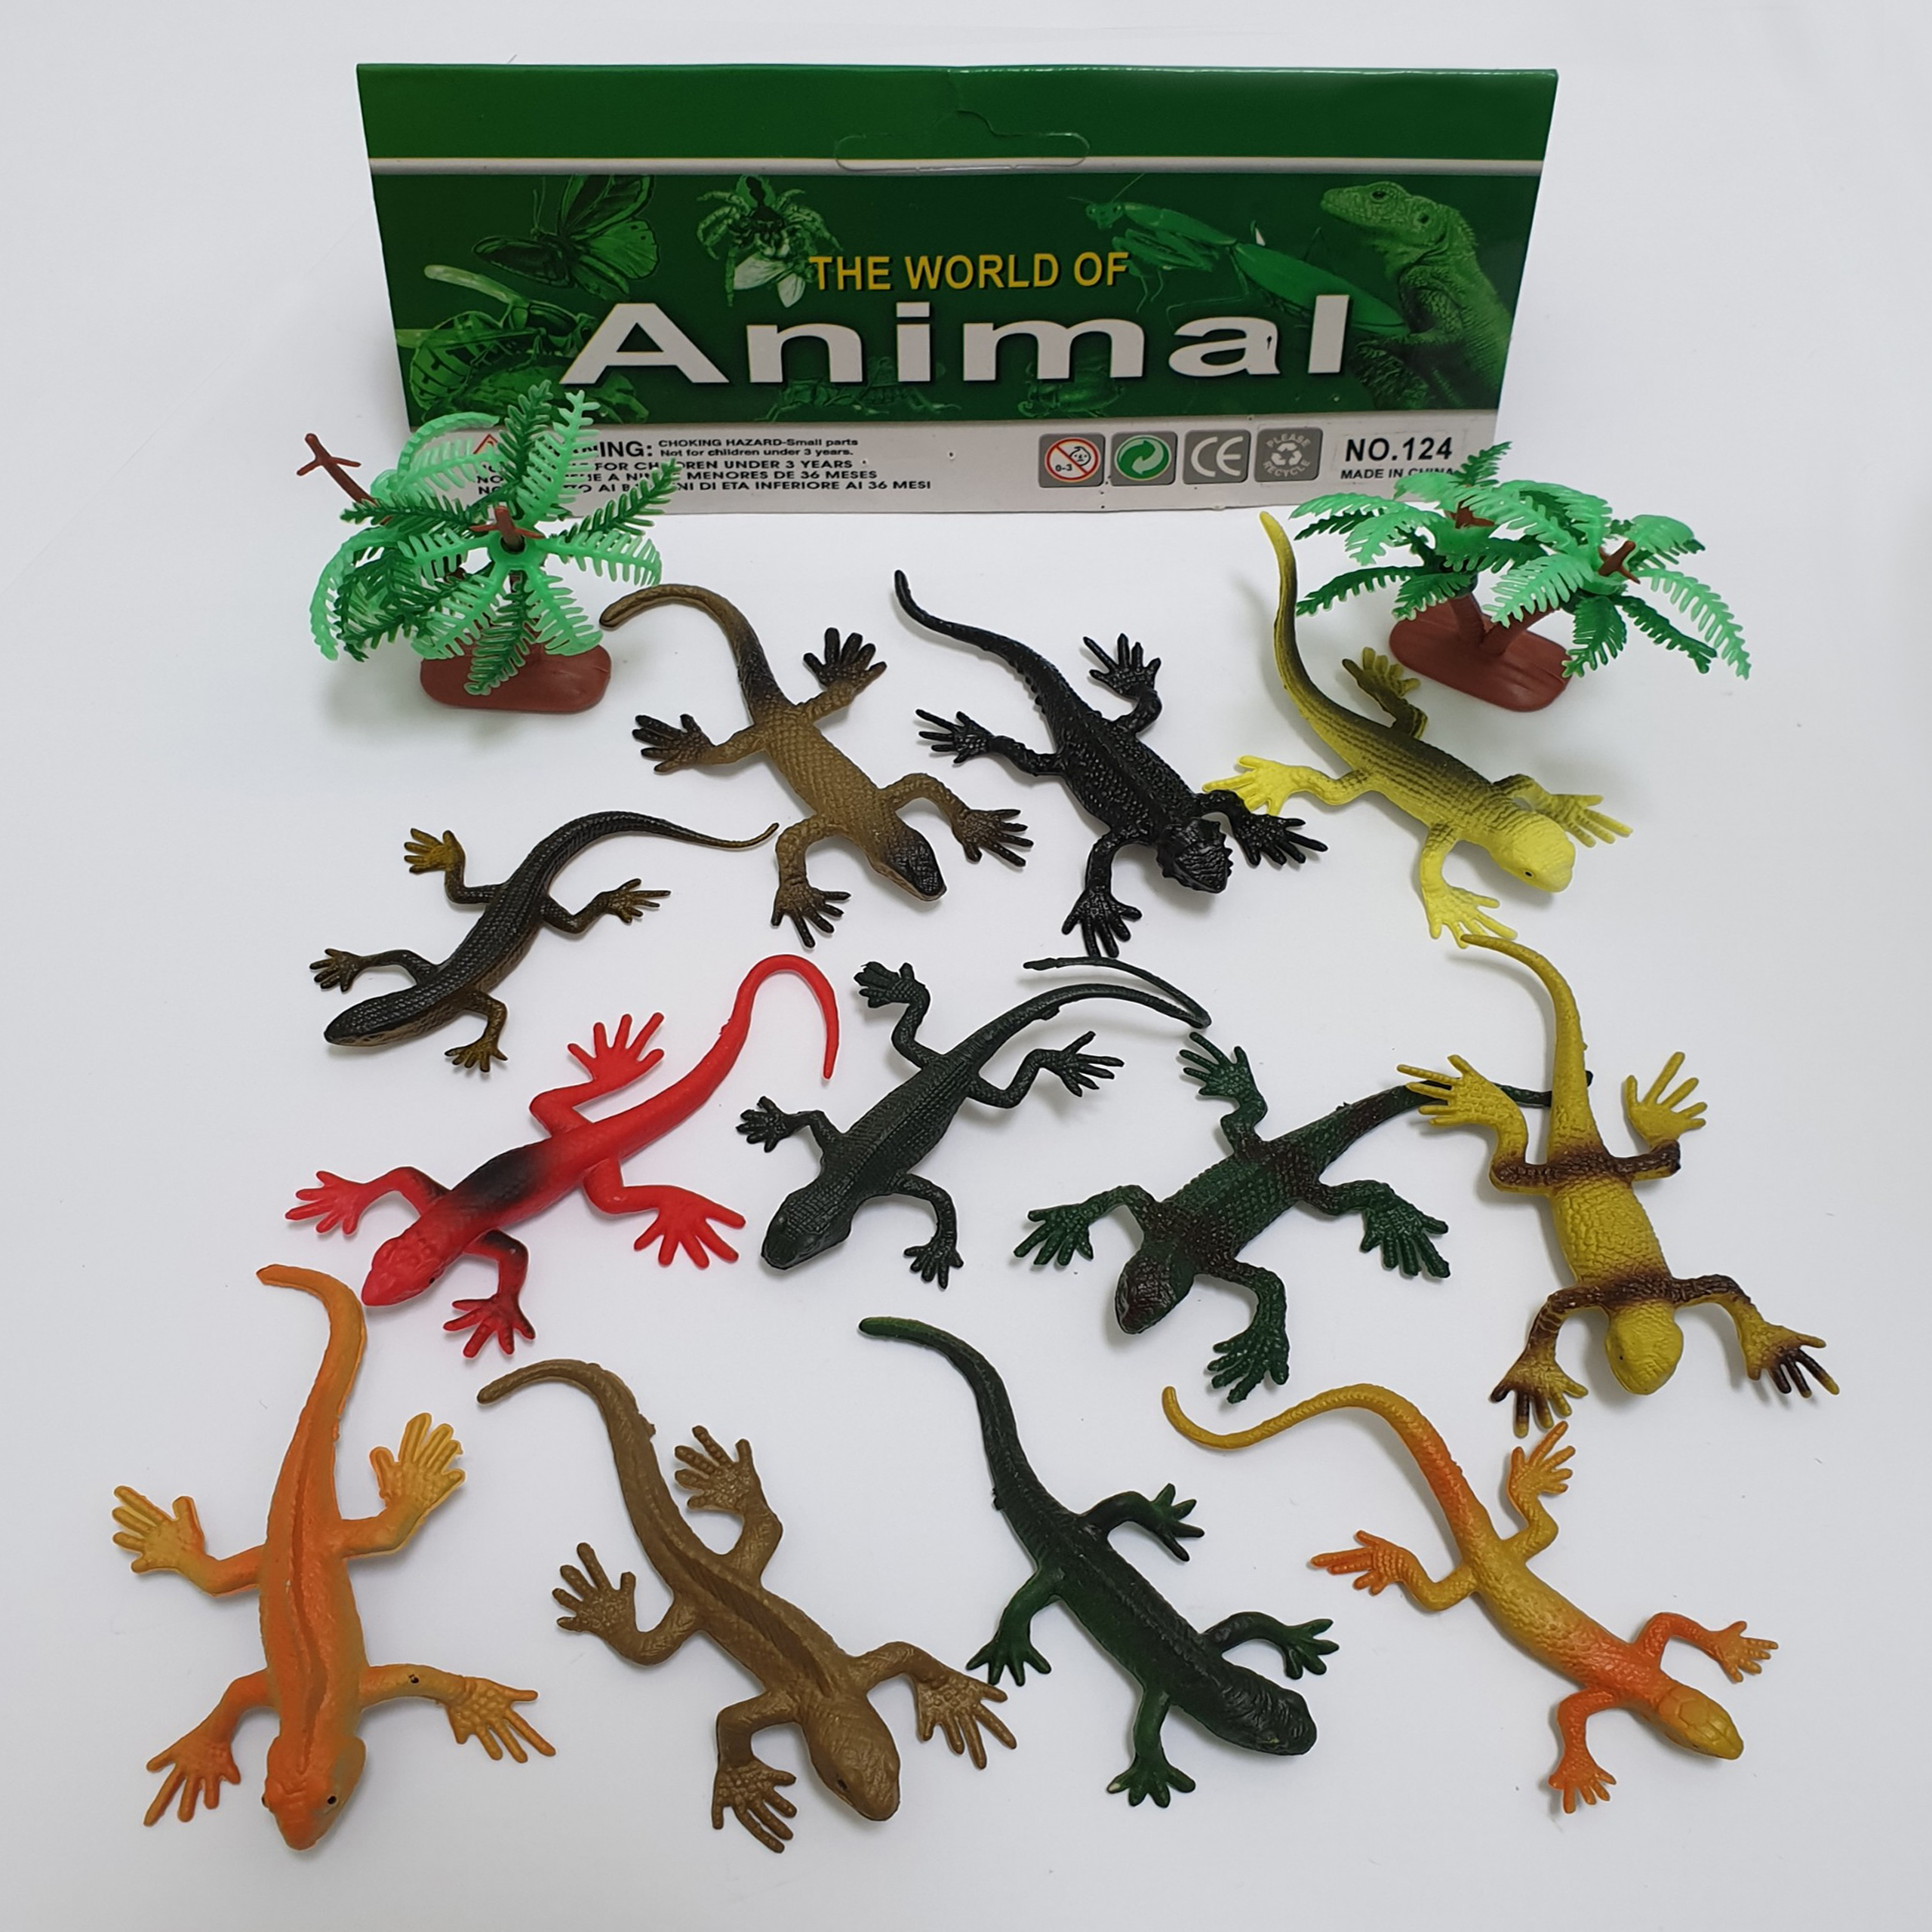 Bộ 12 đồ chơi Tắc Kè Safari hoang dã (dài 8 cm) New4all ANIMAL WORLD mô hình tắc kè thằn lằn nhựa giả cho bé trên 3 tuổi